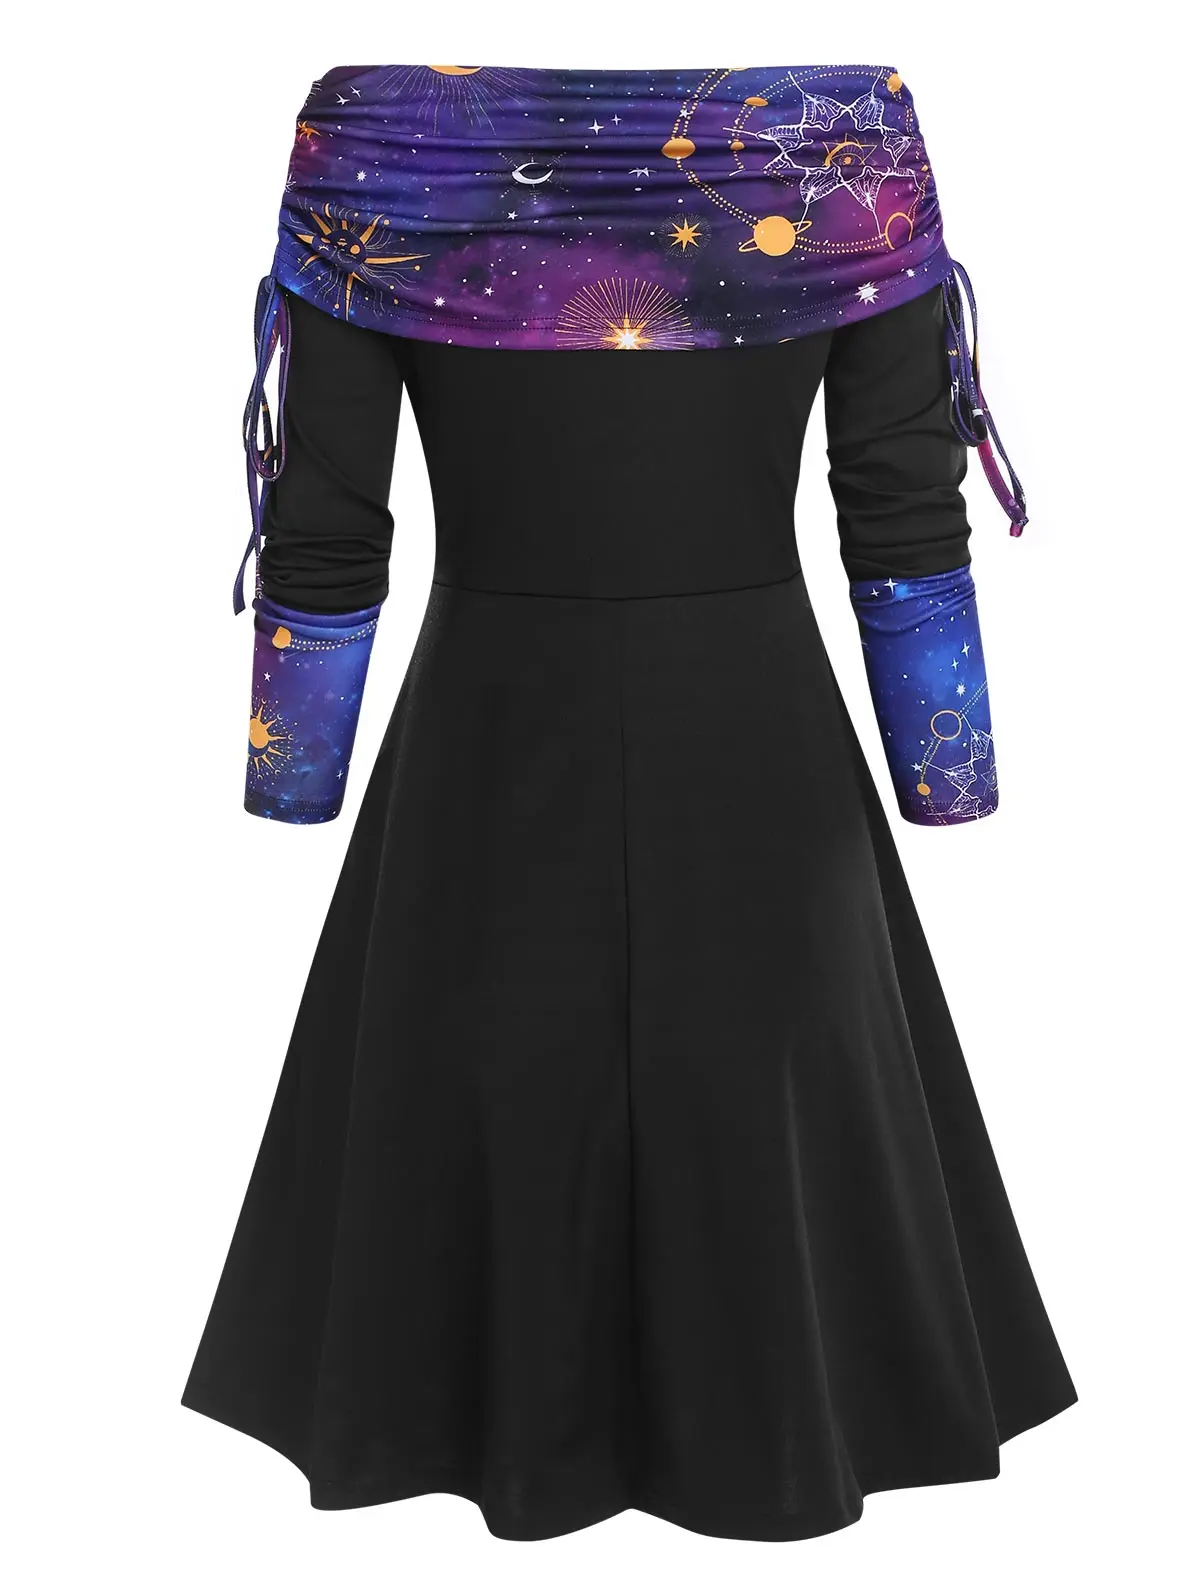 Платье с объемным принтом Галактики платье открытыми плечами в горошек